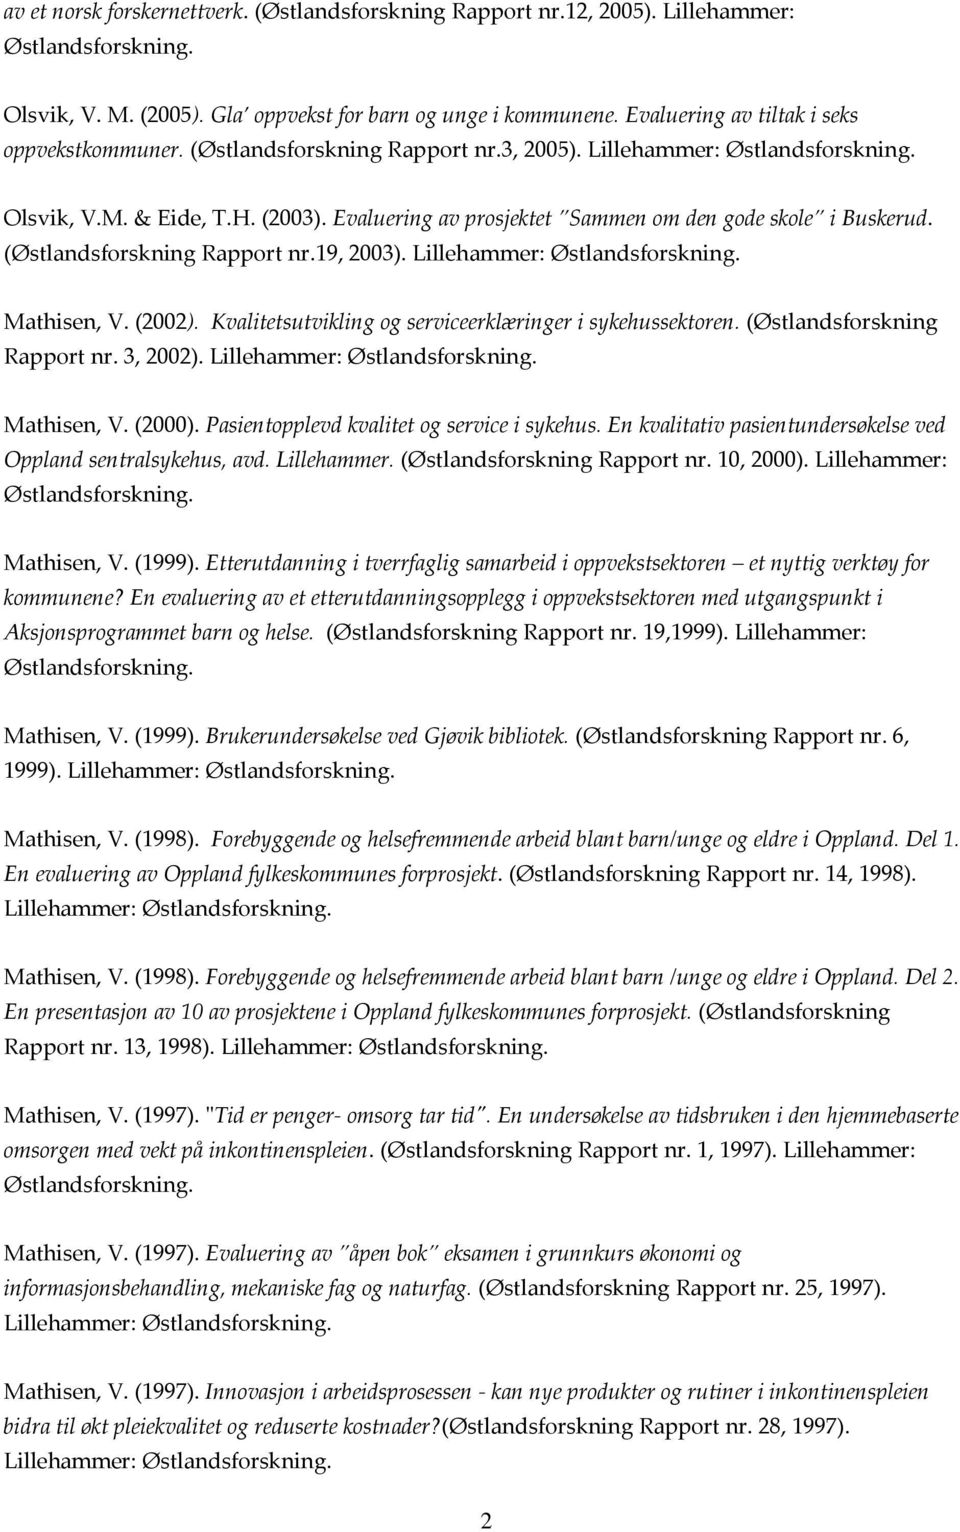 Lillehammer: Mathisen, V. (2002). Kvalitetsutvikling og serviceerklæringer i sykehussektoren. (Østlandsforskning Rapport nr. 3, 2002). Lillehammer: Mathisen, V. (2000).